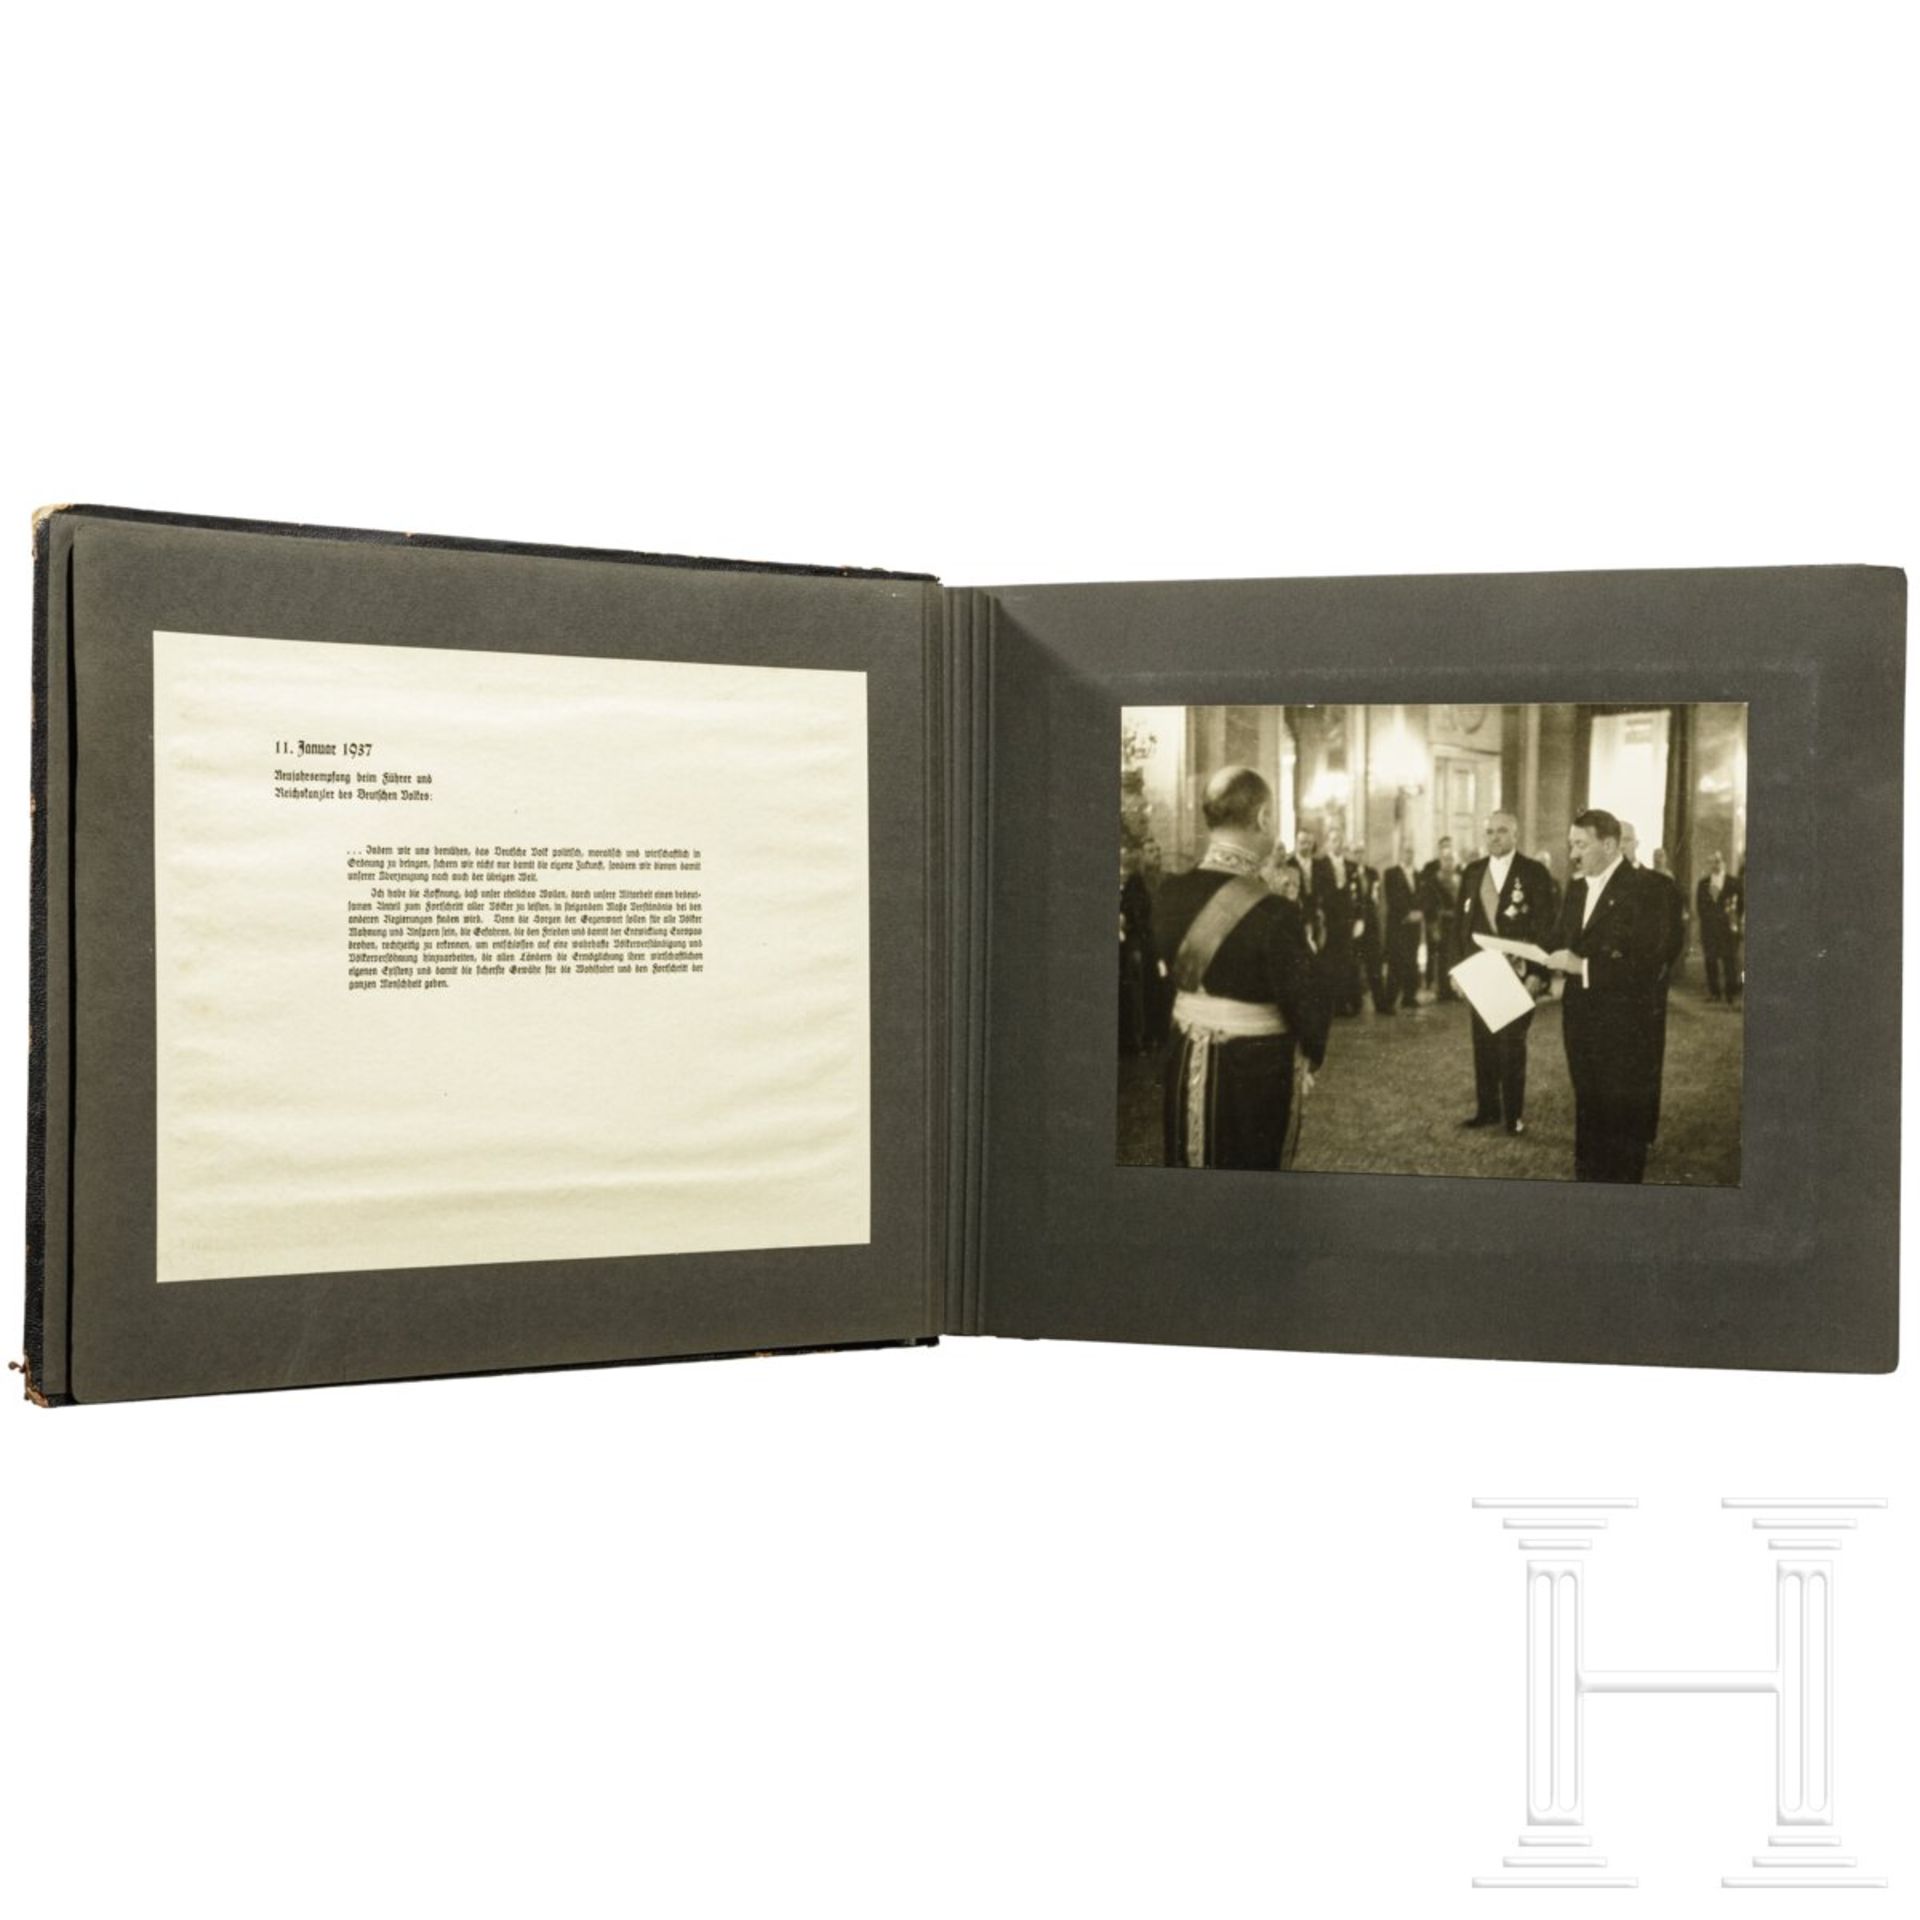 Geschenk-Fotoalbum der Partei 1937 mit 56 großformatigen Fotos und Textblättern - Image 9 of 17